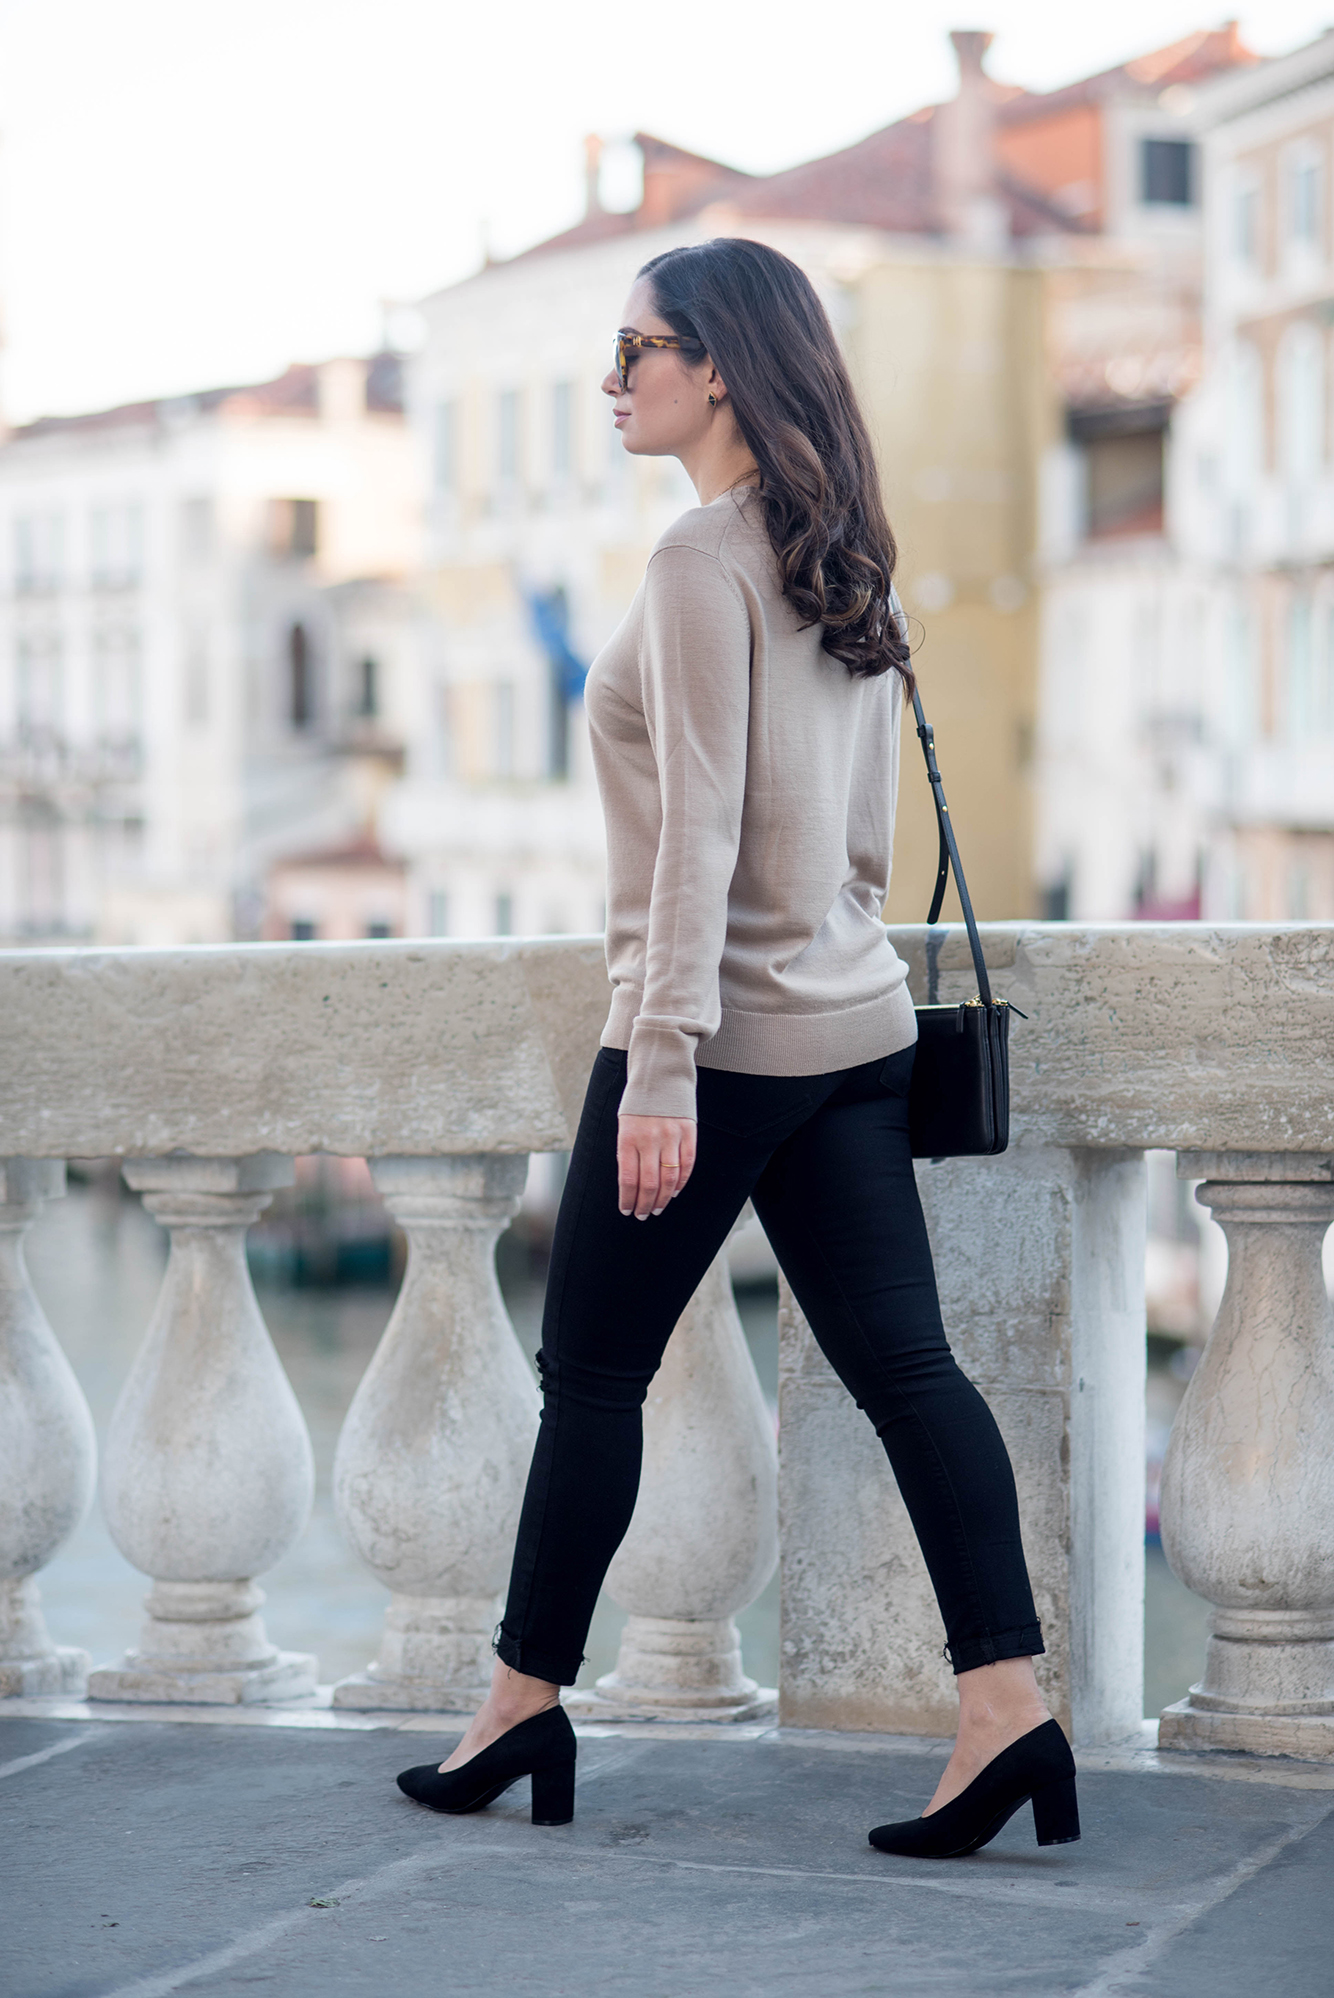 Fashion blogger Cee Fardoe of Coco & Vera walks on Rialto Bridge wearing a camel Uniqlo sweater